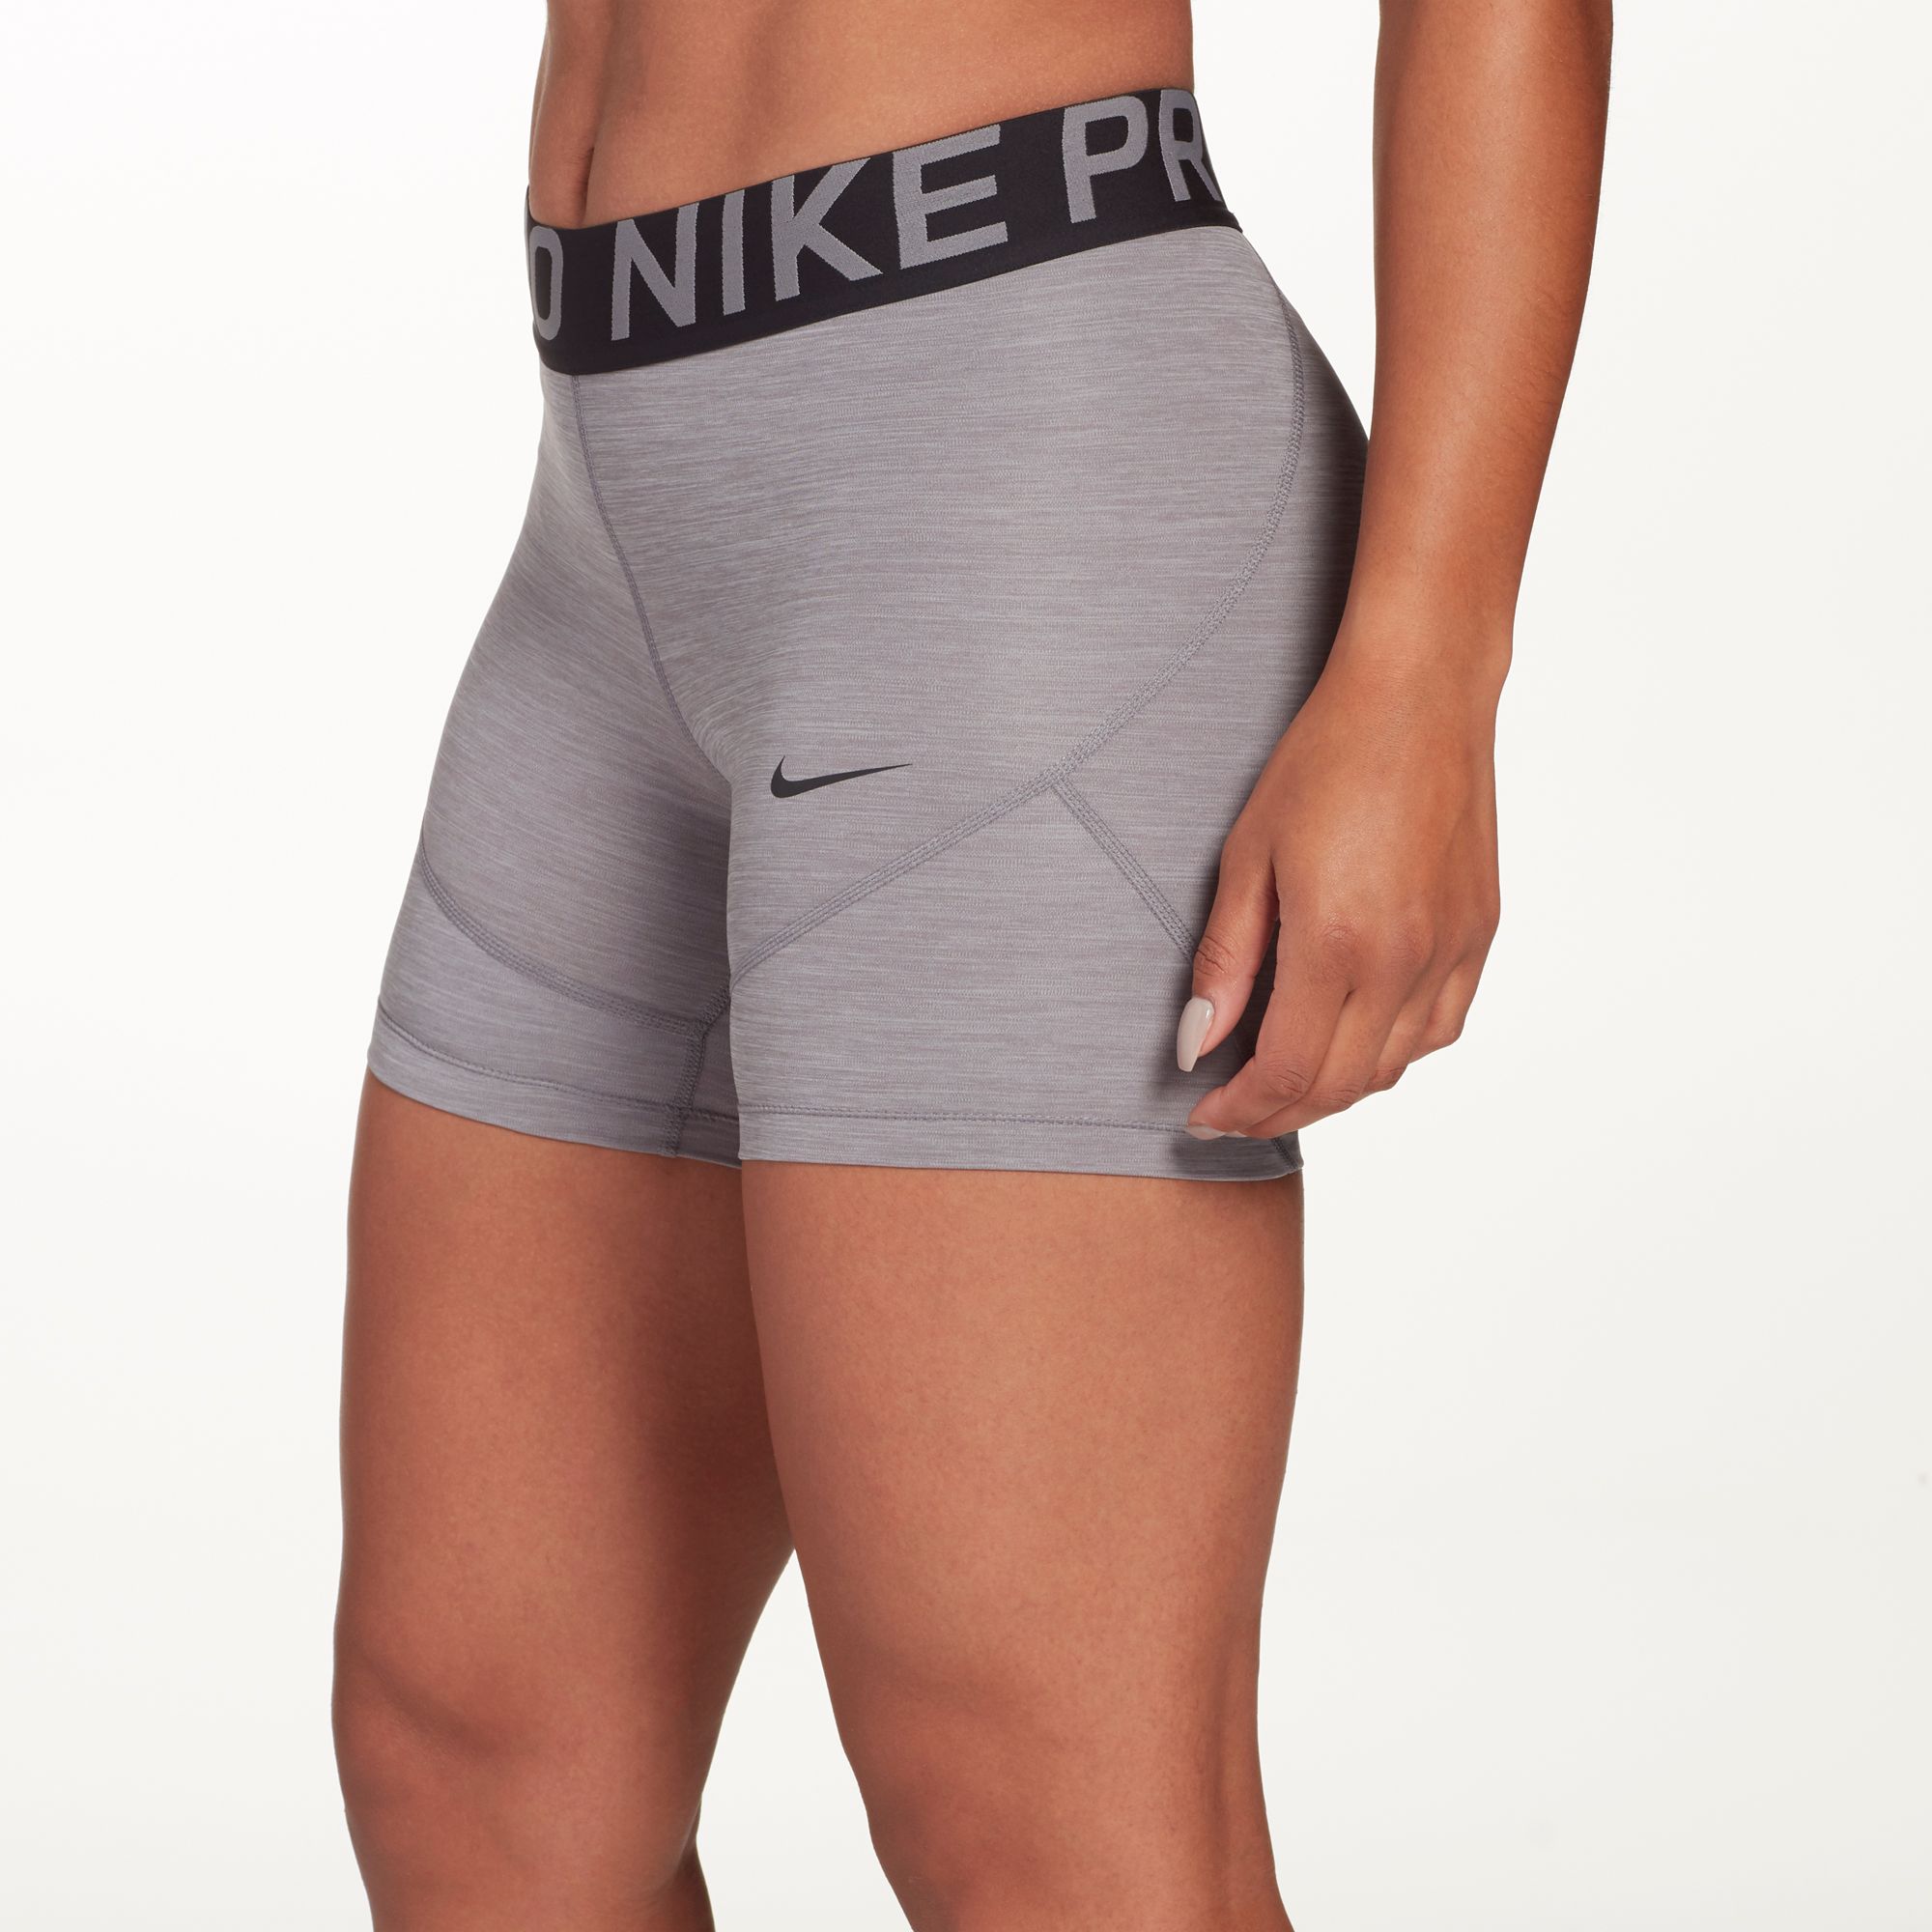 nike women's 5 inch shorts